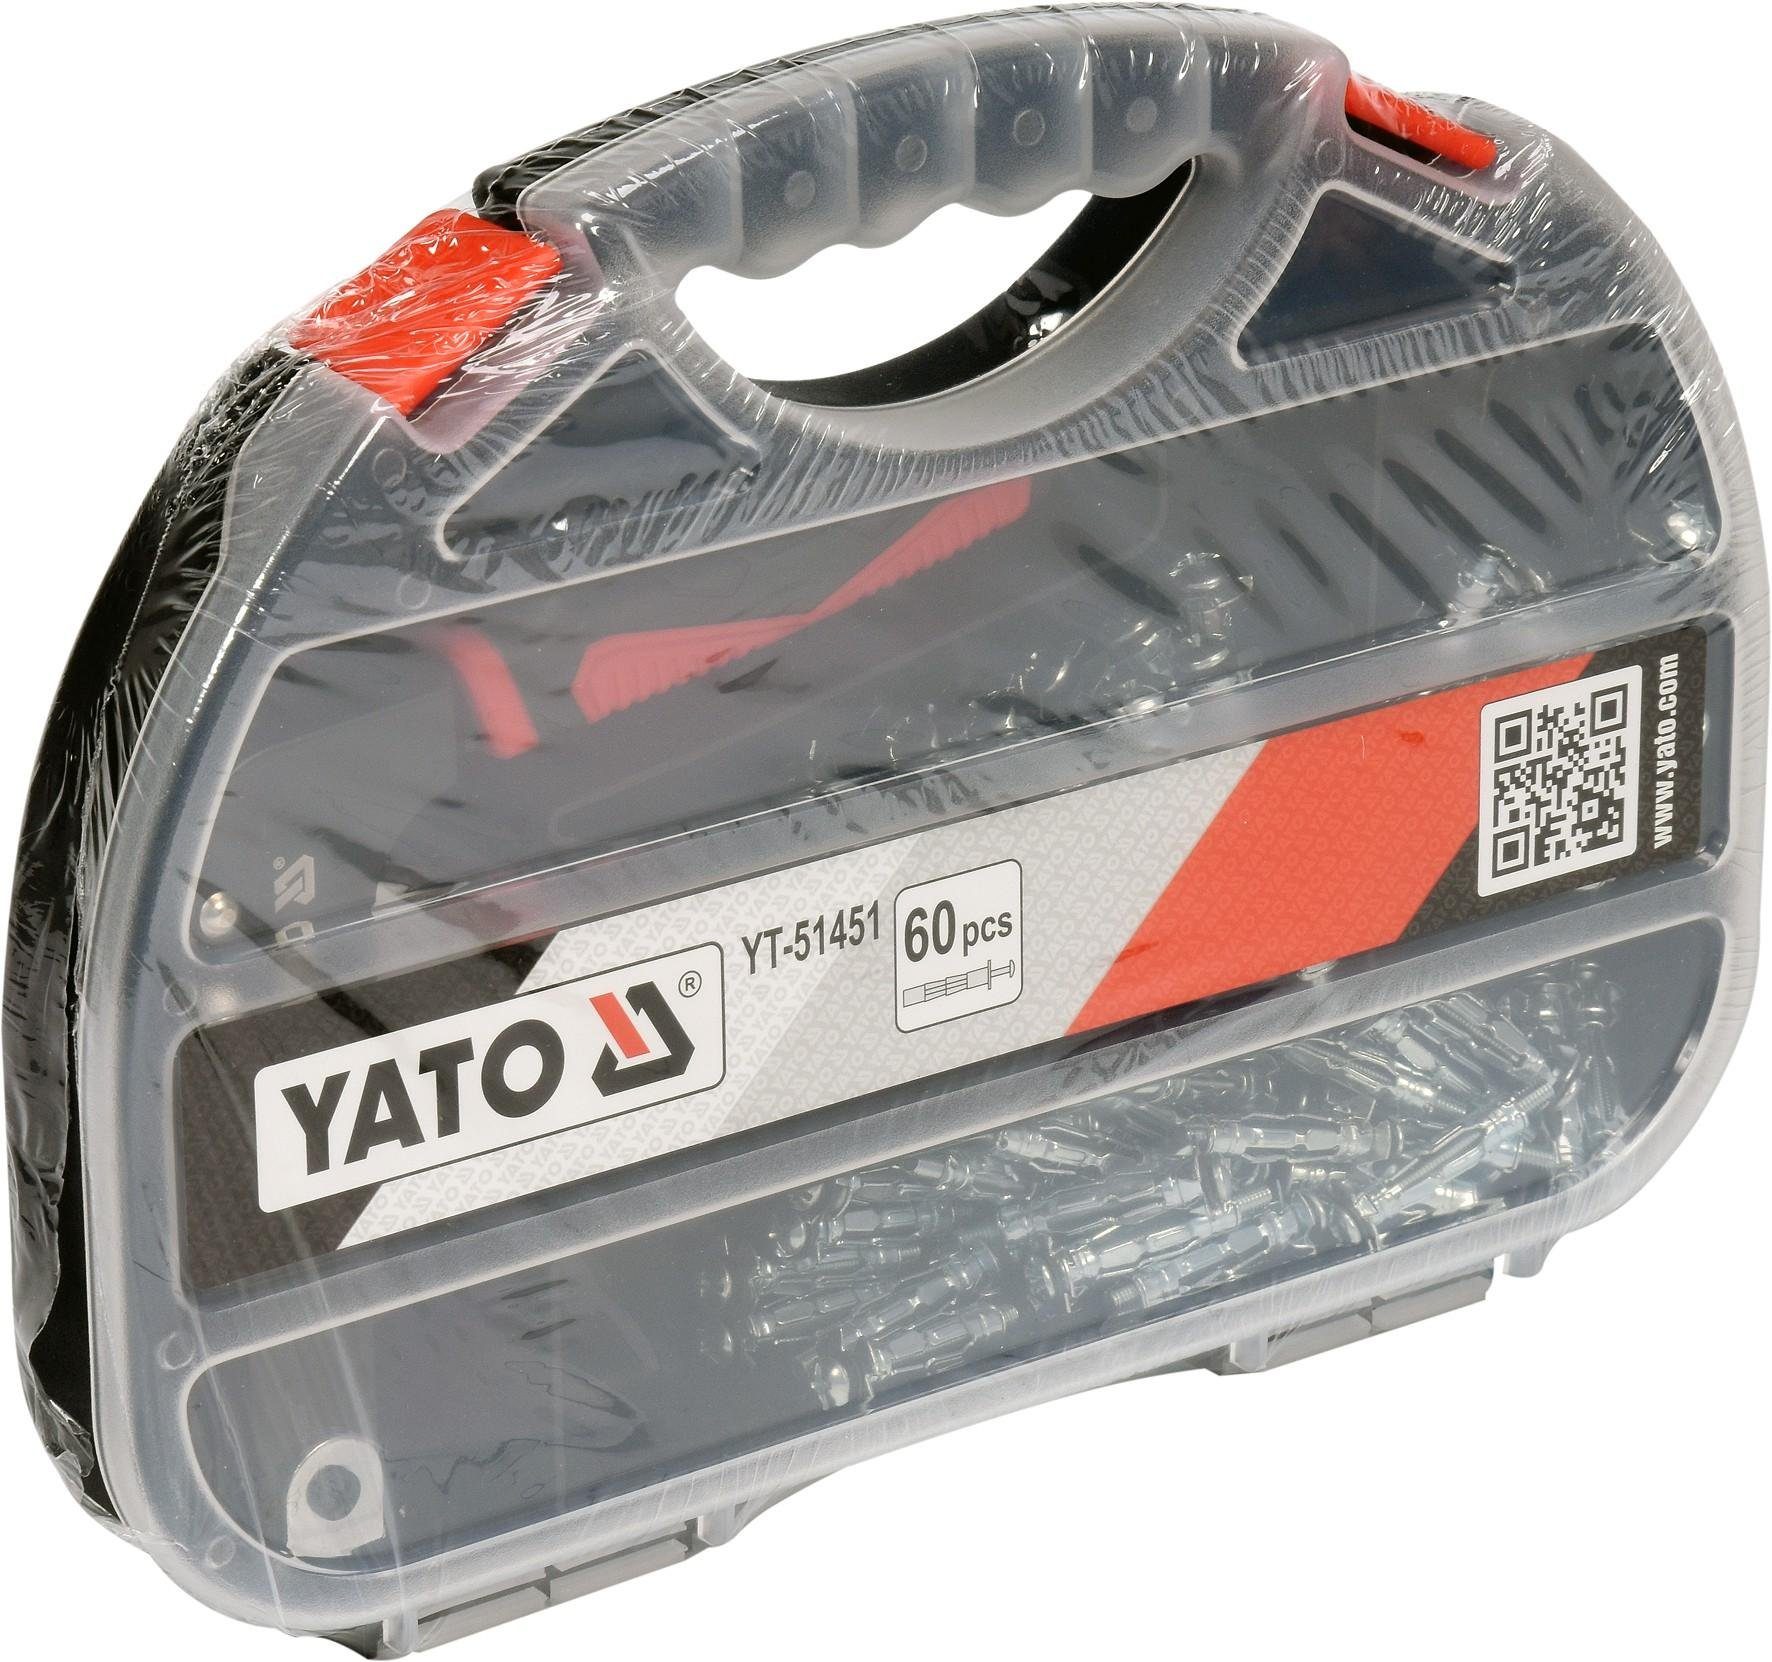 Yato YT-51451 Hohlraumduebelzange Werkstattpresse PYATO